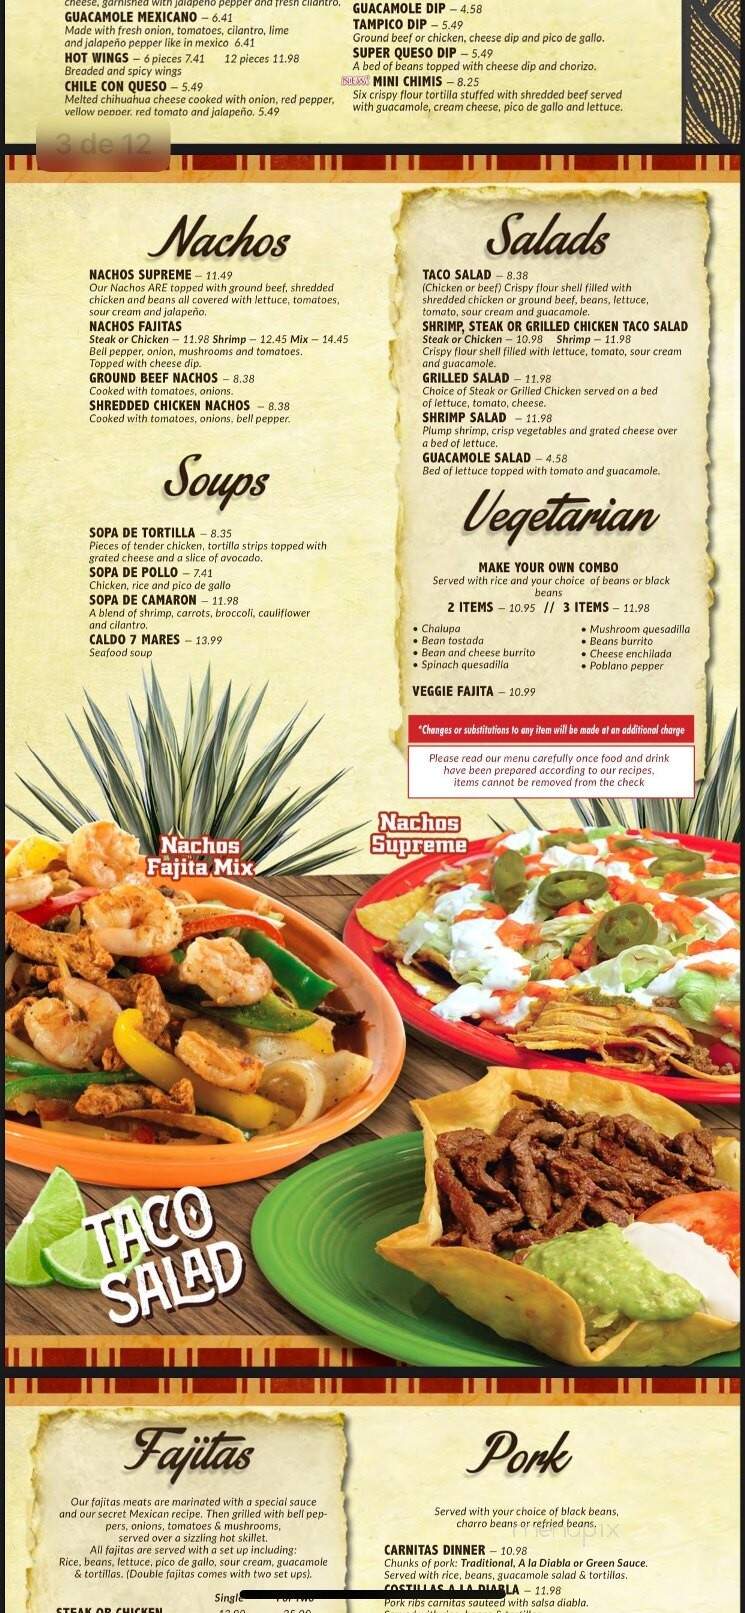 Los Cabos Mexican Restaurant - Germantown, TN